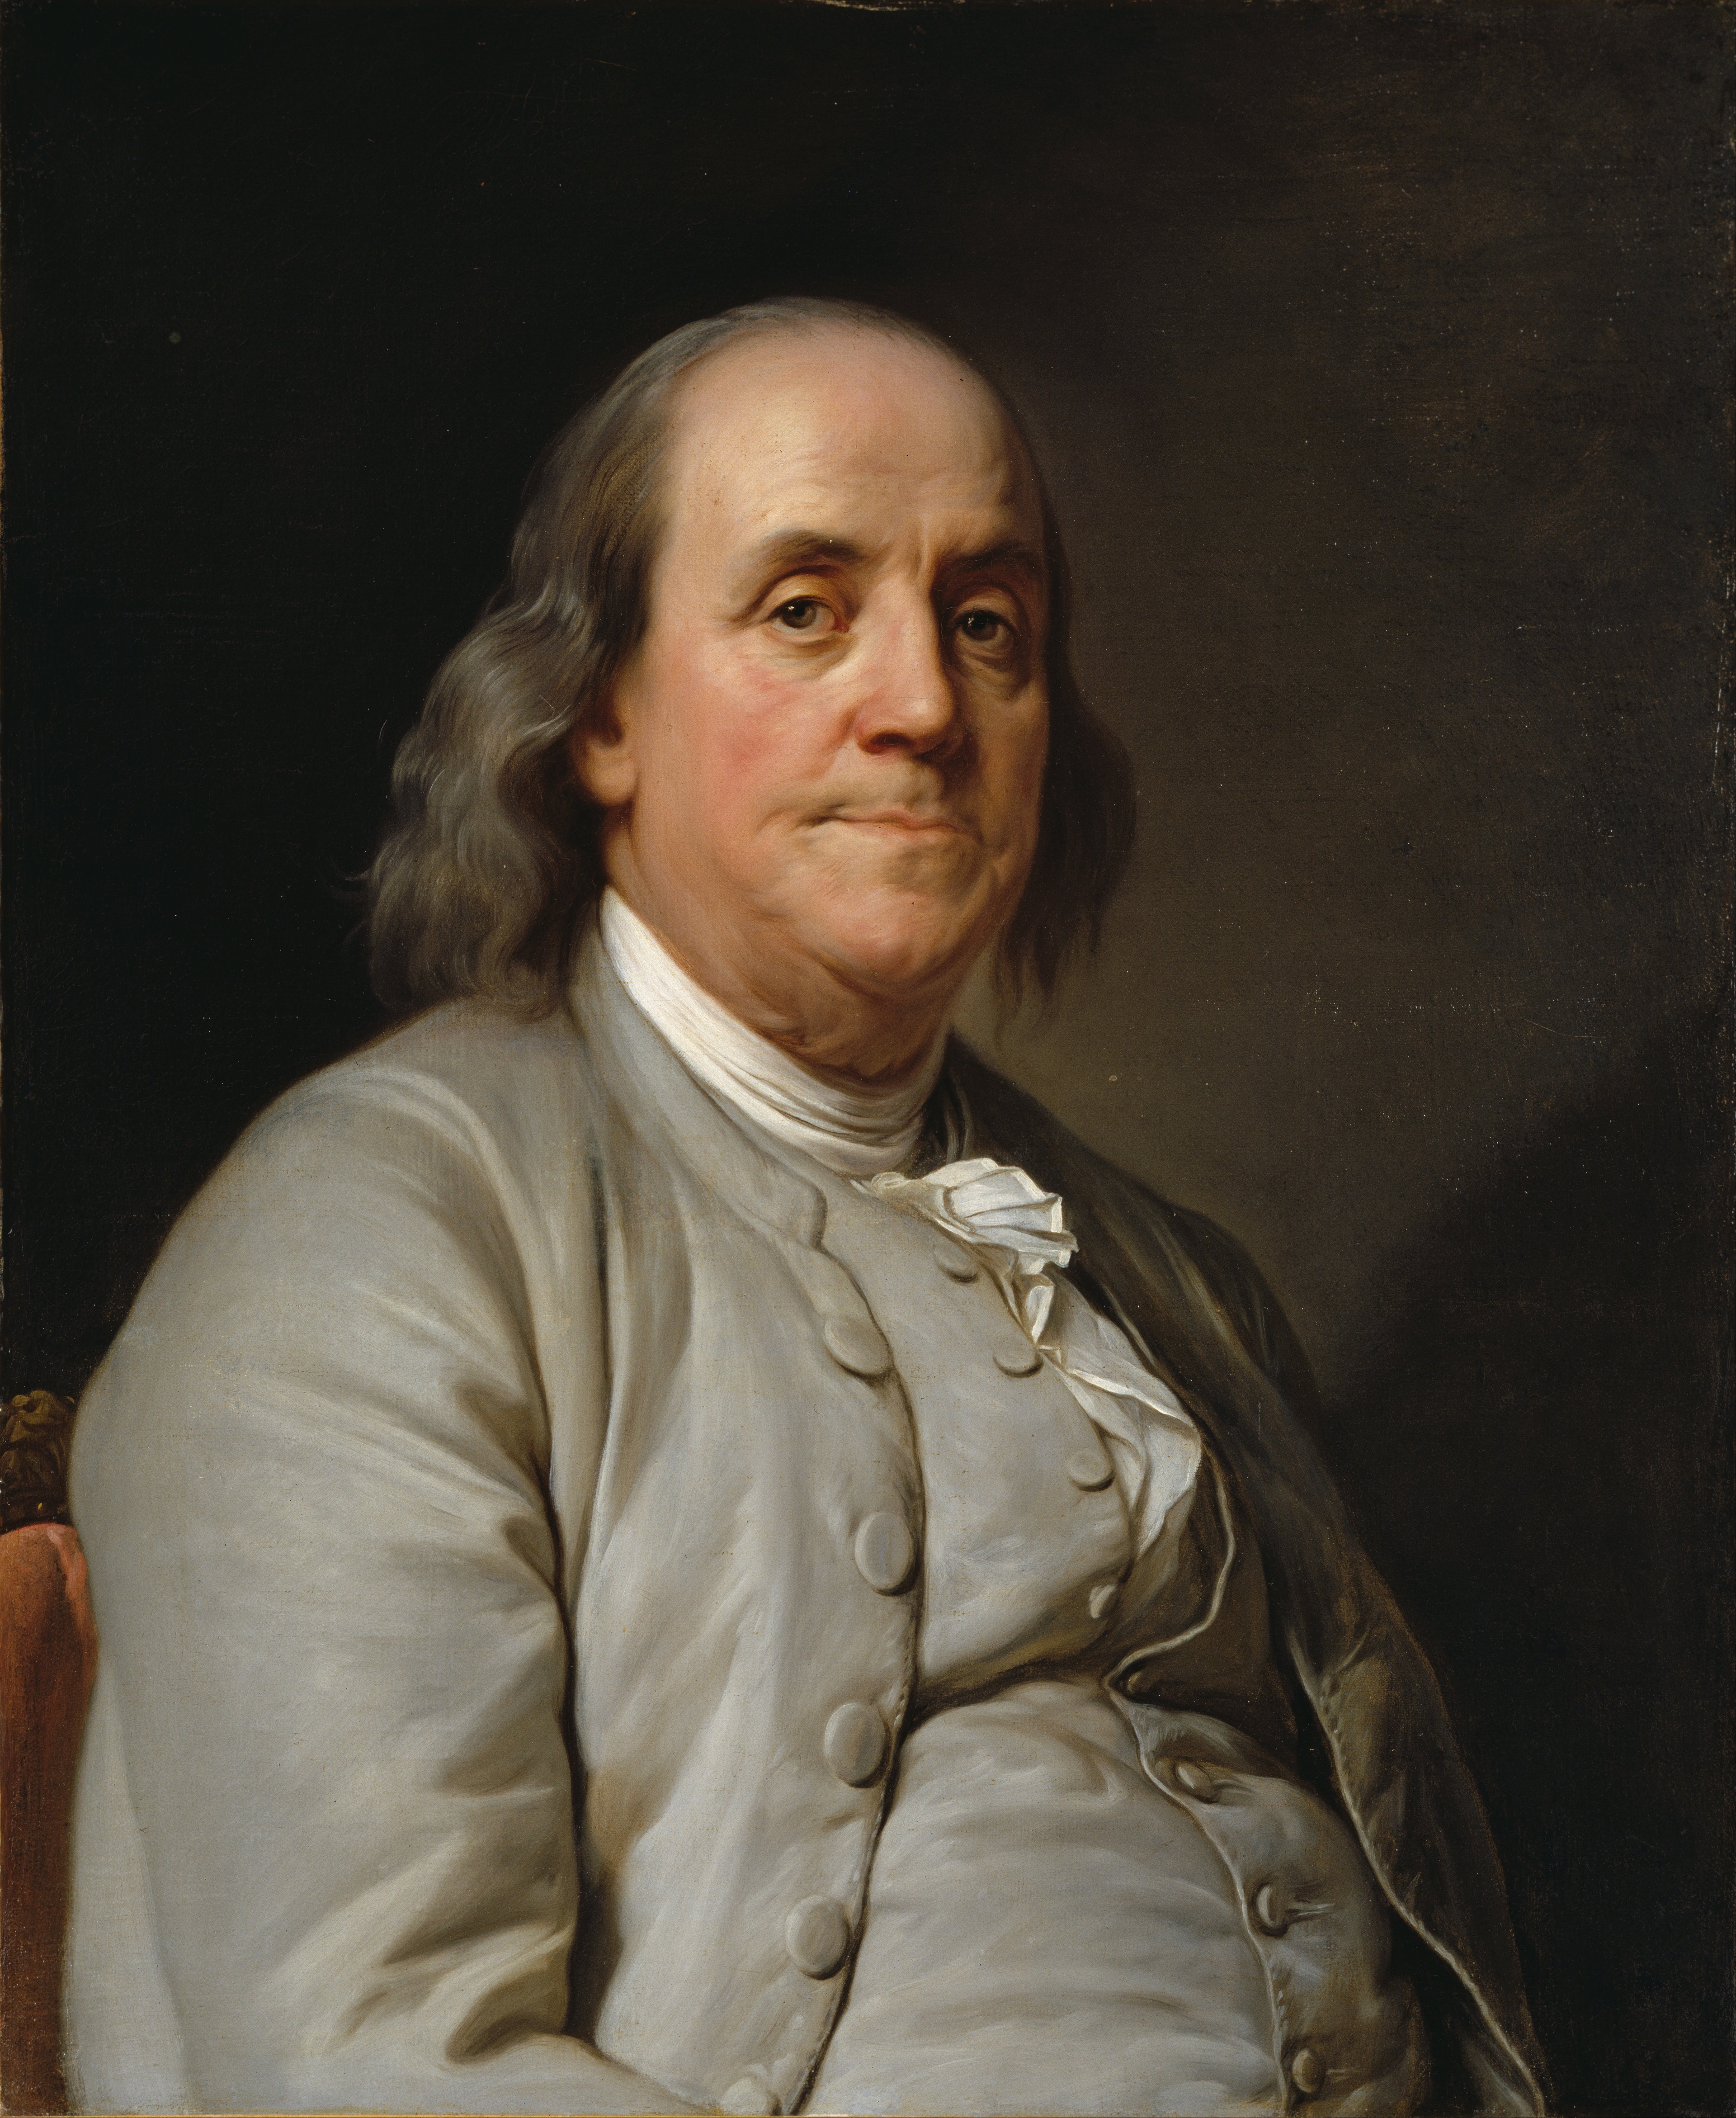 auteur Benjamin Franklin de la citation Au début et tôt pour se lever rend un homme en bonne santé, riche et sage.